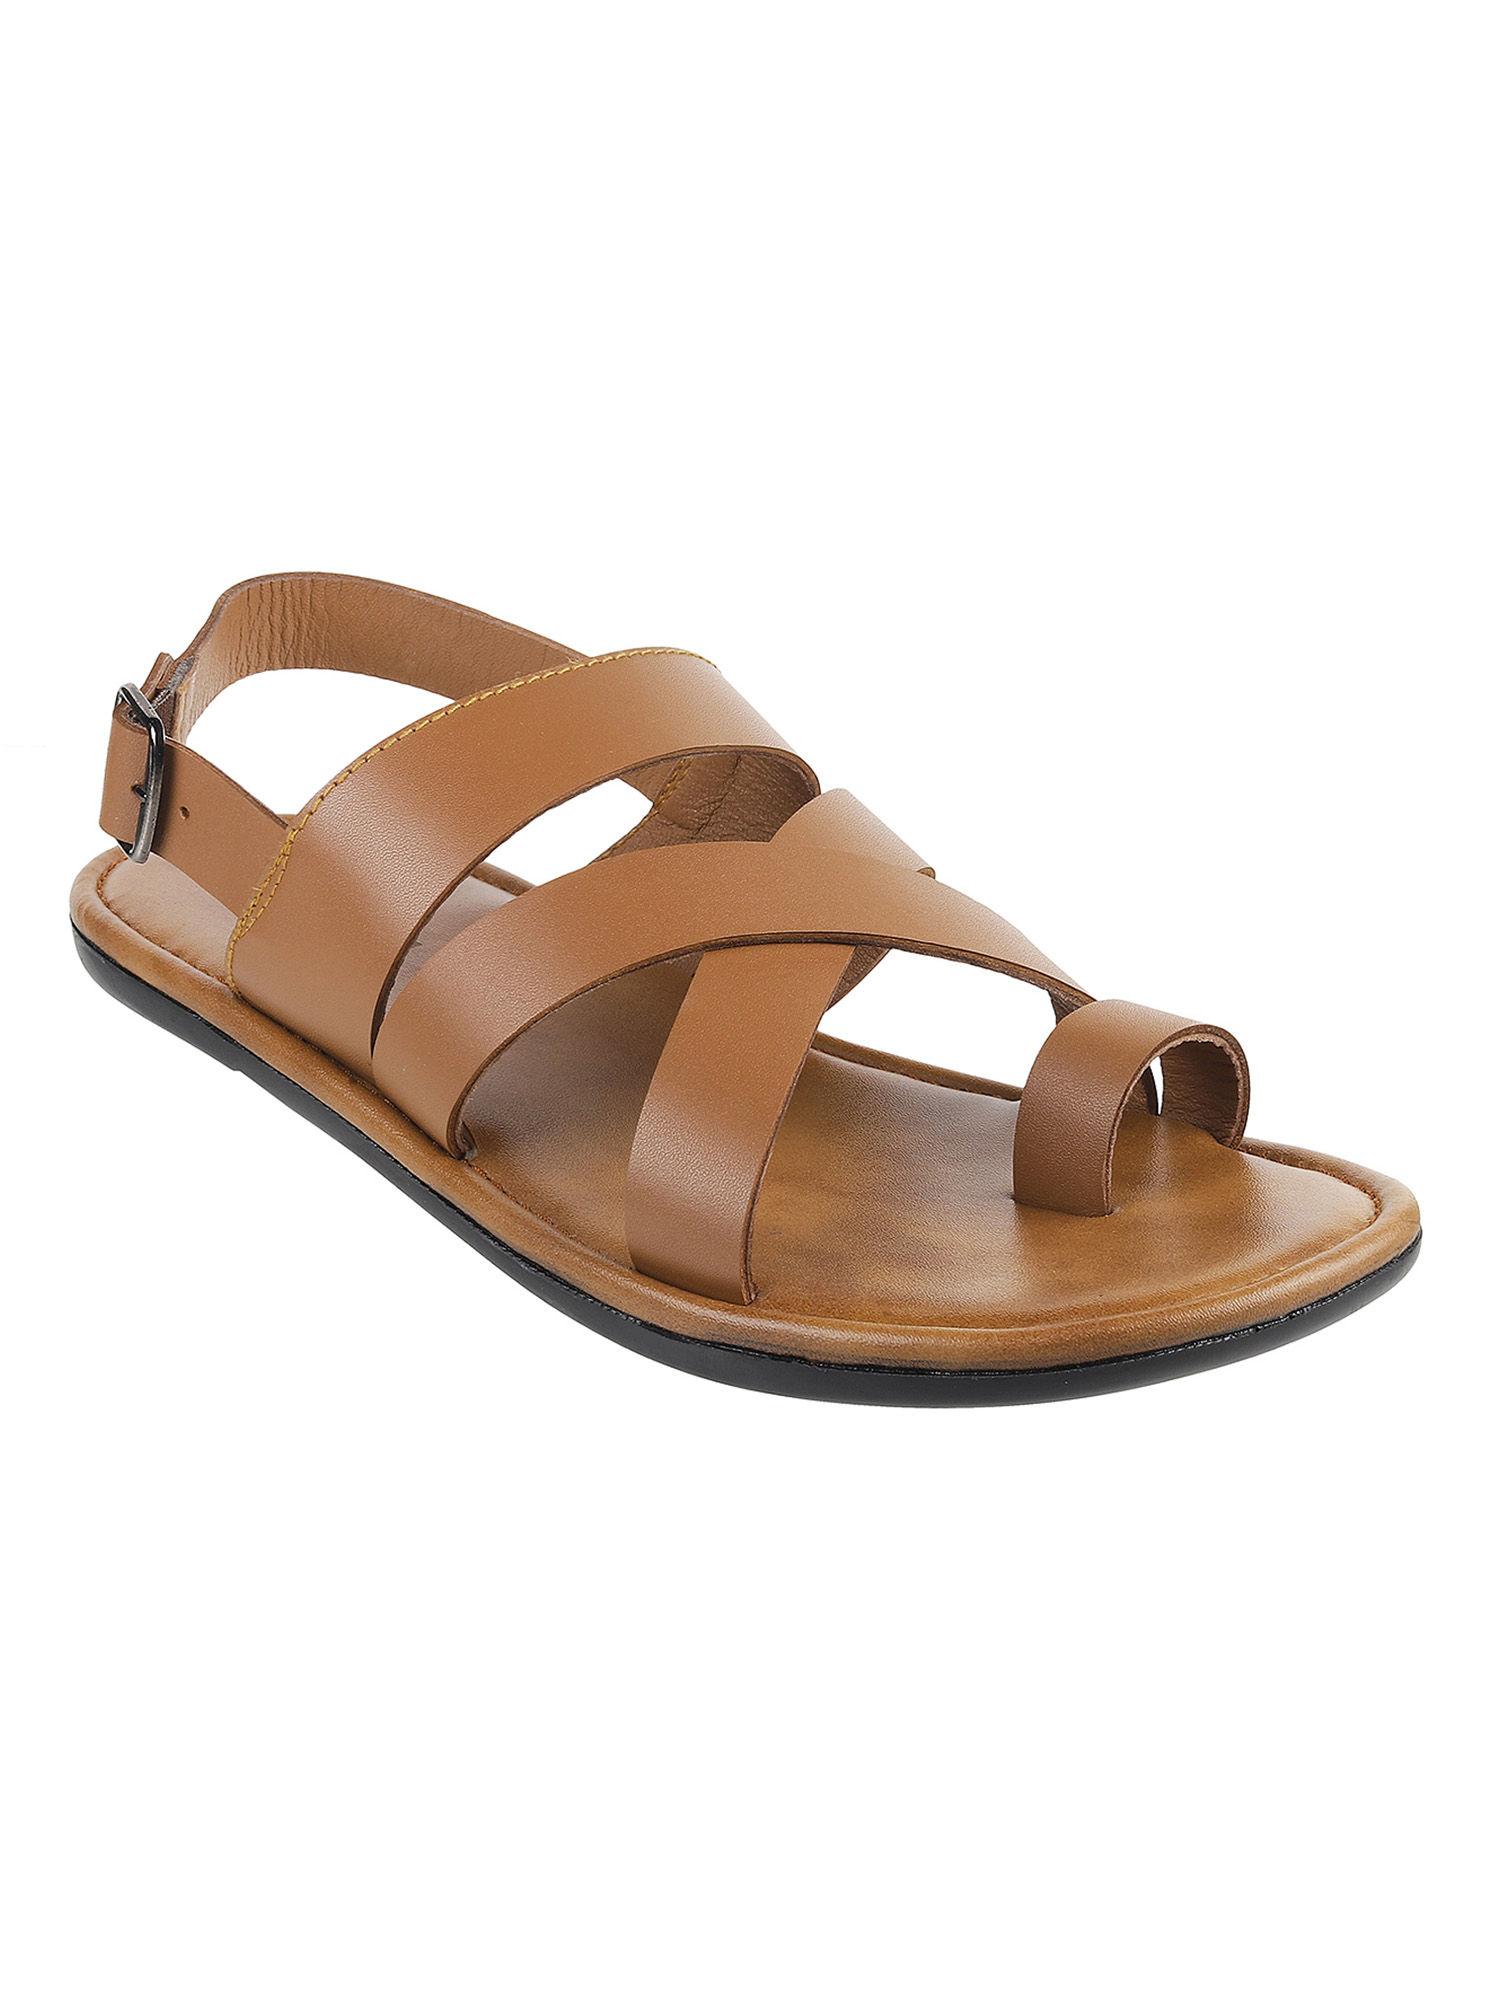 men's tan sandals